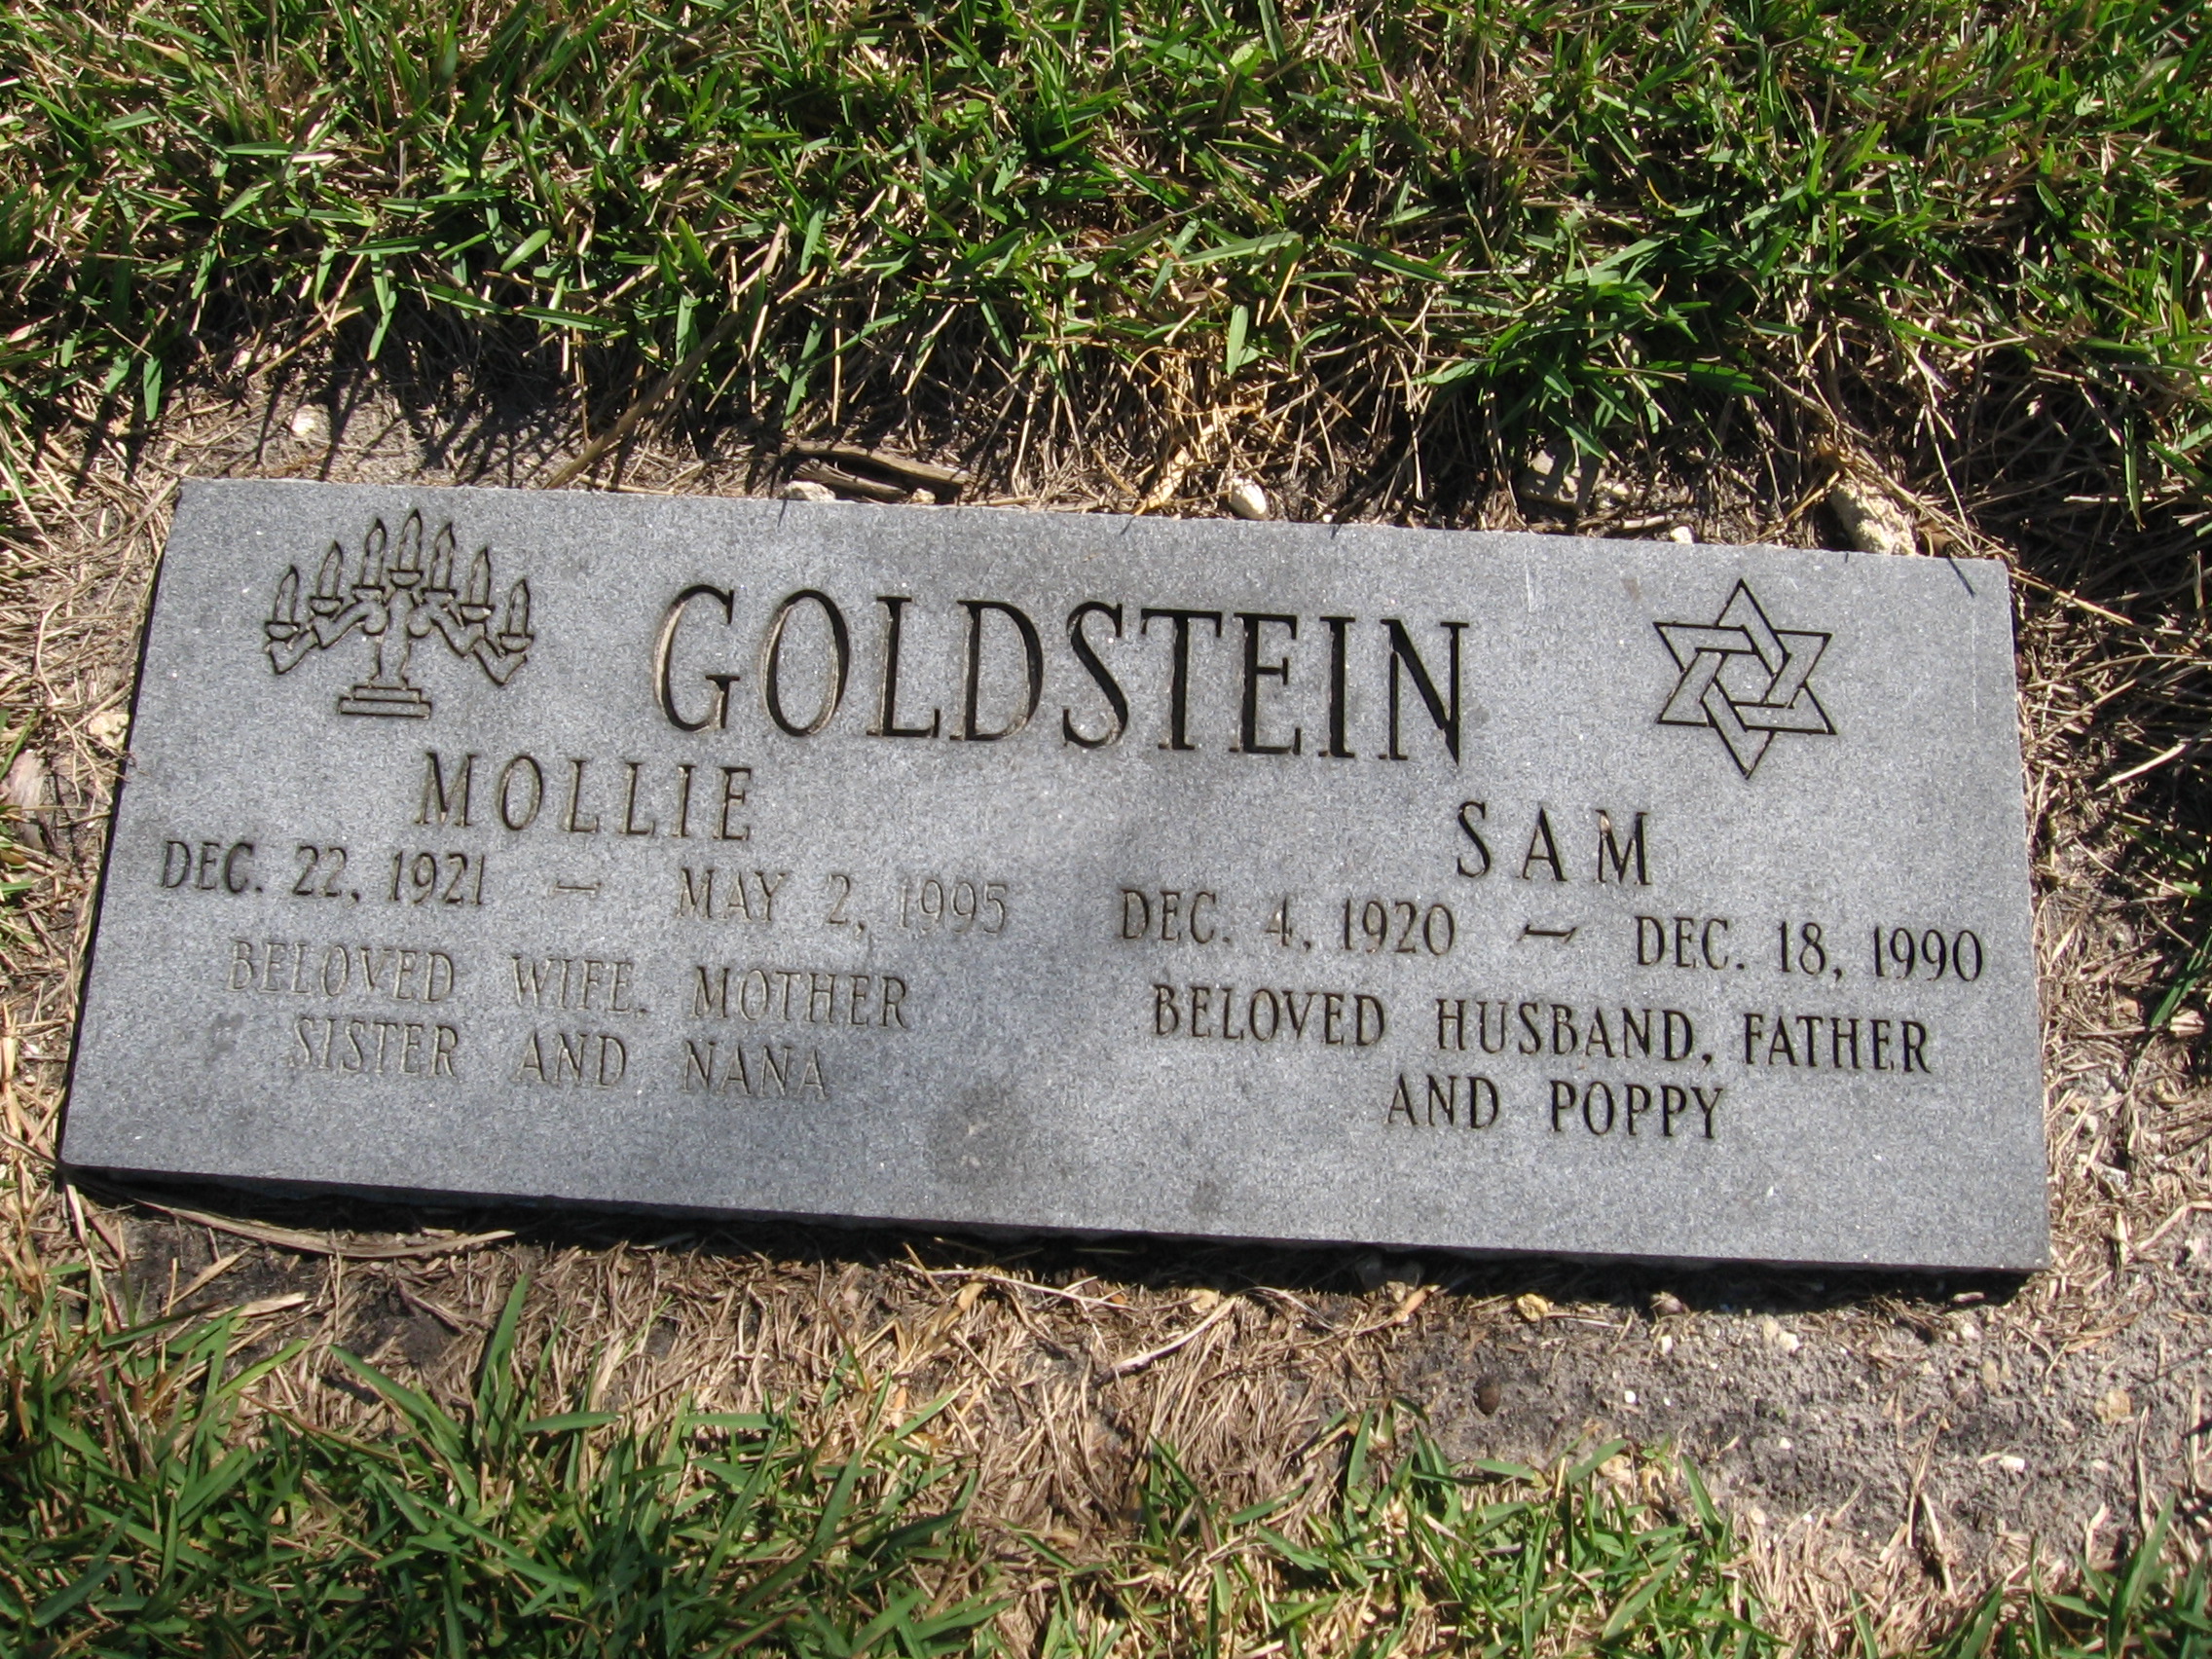 Mollie Goldstein